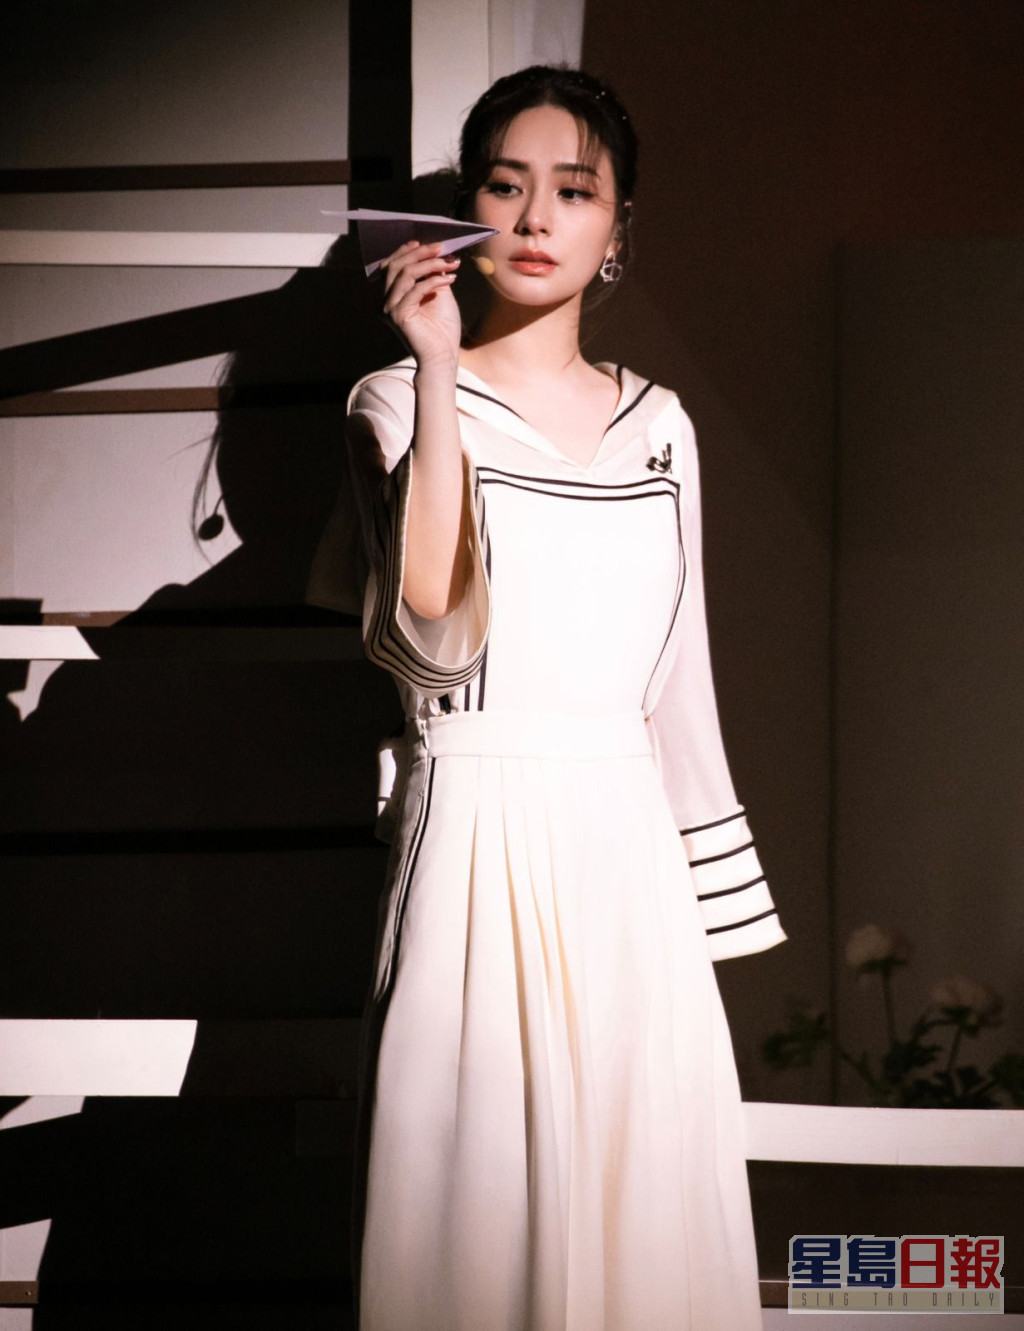 阿娇与宁静、赵樱子以舞台剧的形式演绎张学友经典作品《情书》。